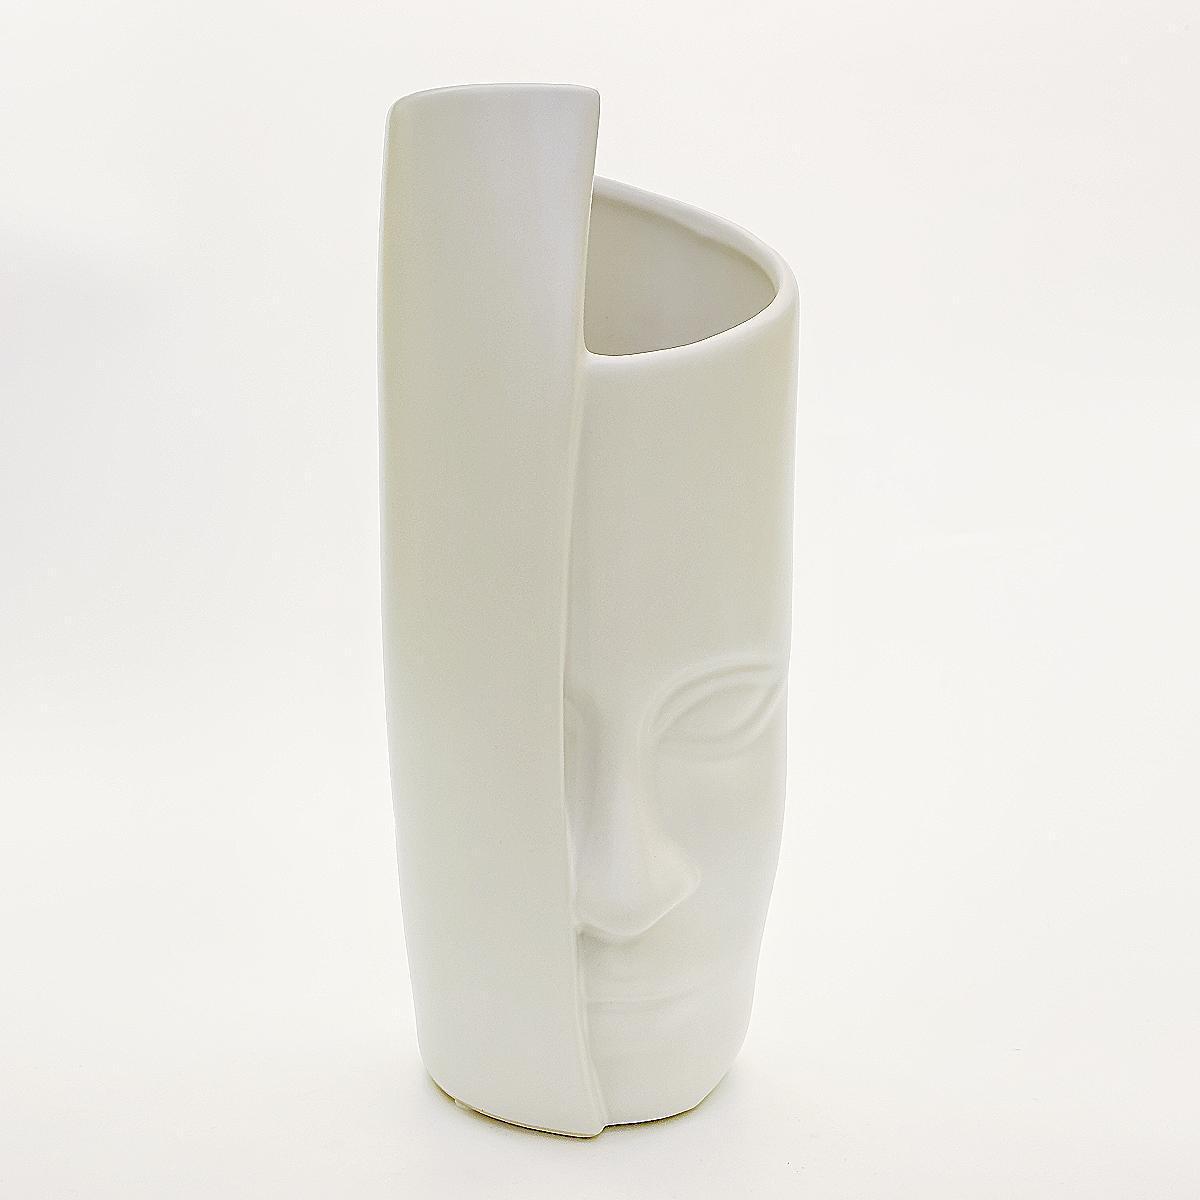 北欧简约人面艺术陶瓷花瓶摆件家居样板间软装插花白色花瓶摆设图